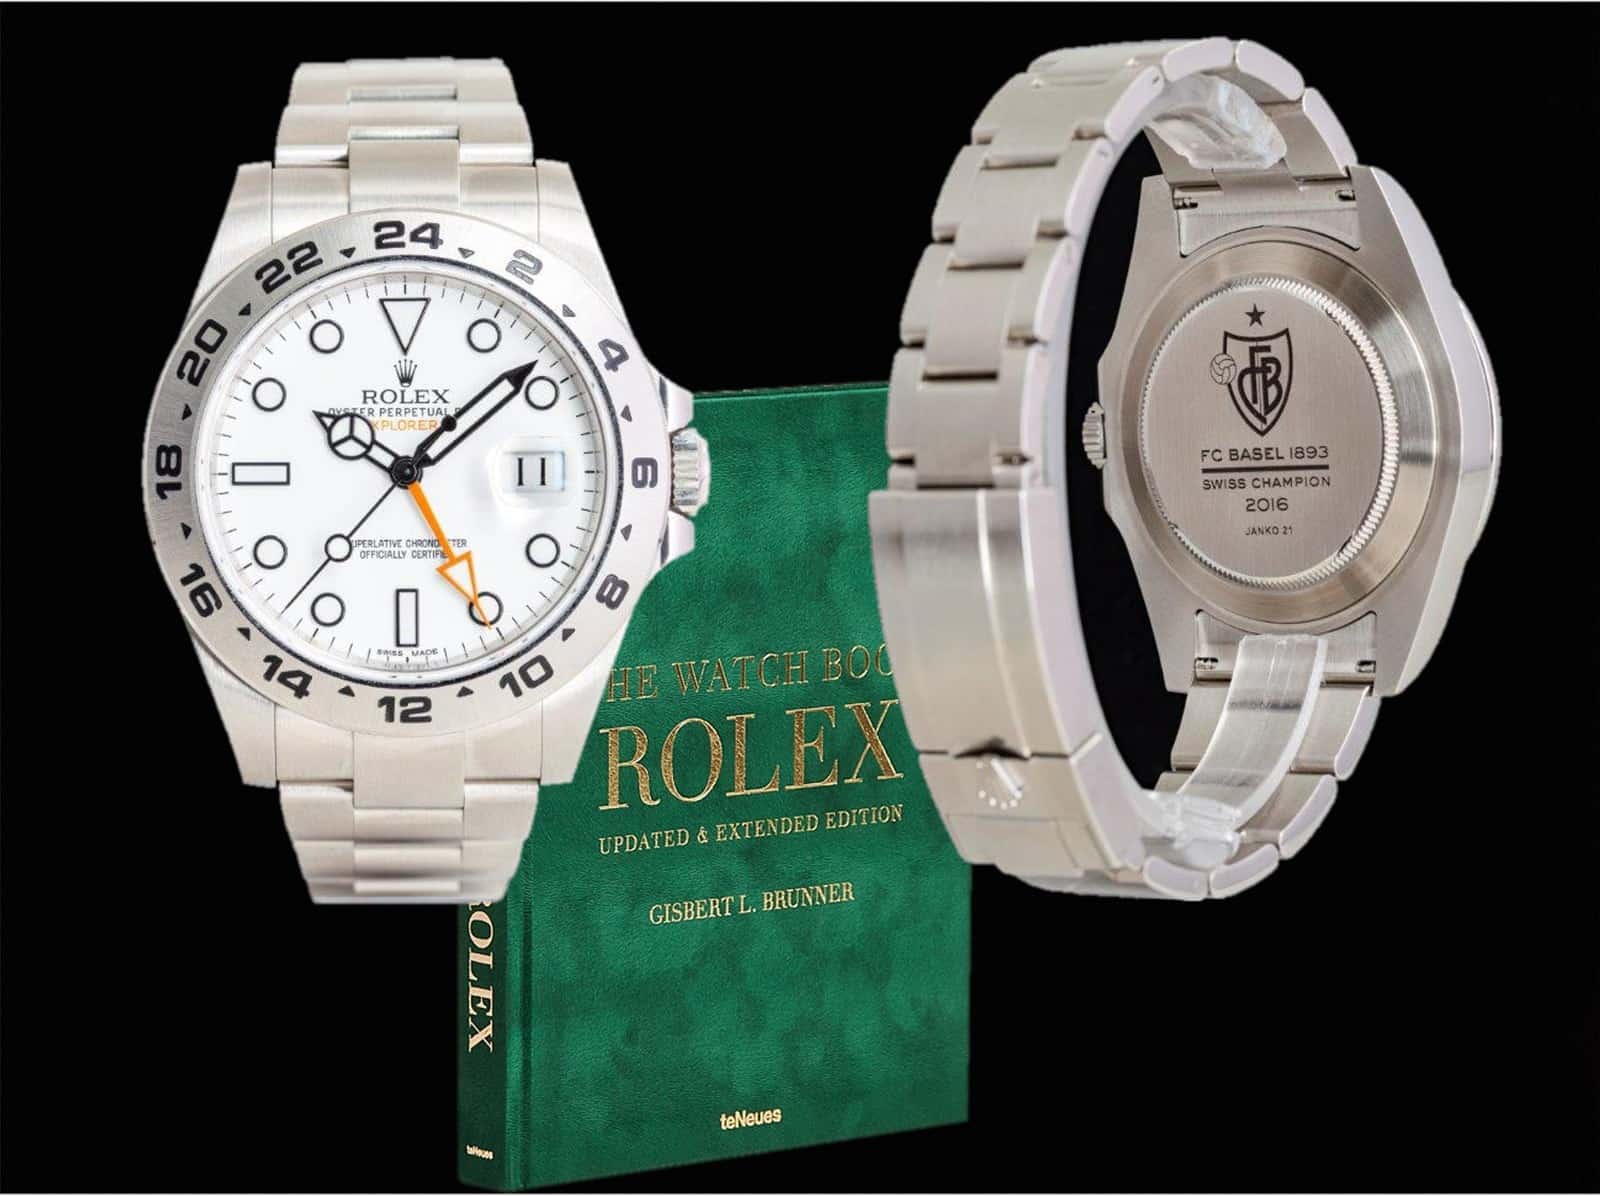 Uhrenrolle - Seite 2 - Rolex Allgemein - Watchlounge Forum